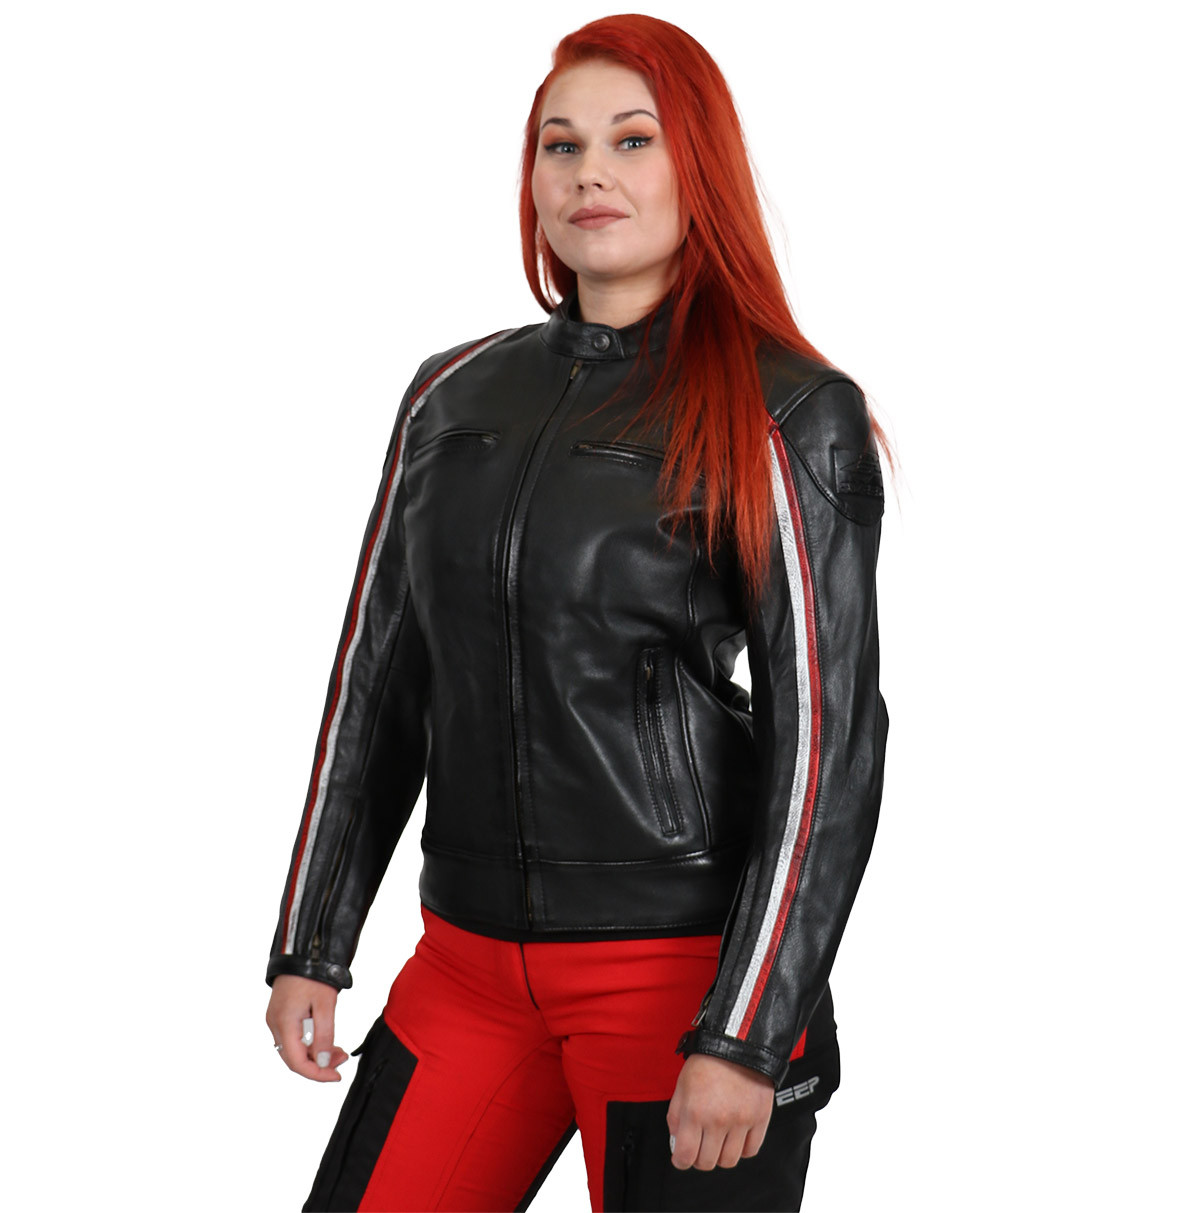 Sweep Roadster ladies leather jacket, black/white/red - Motorbike